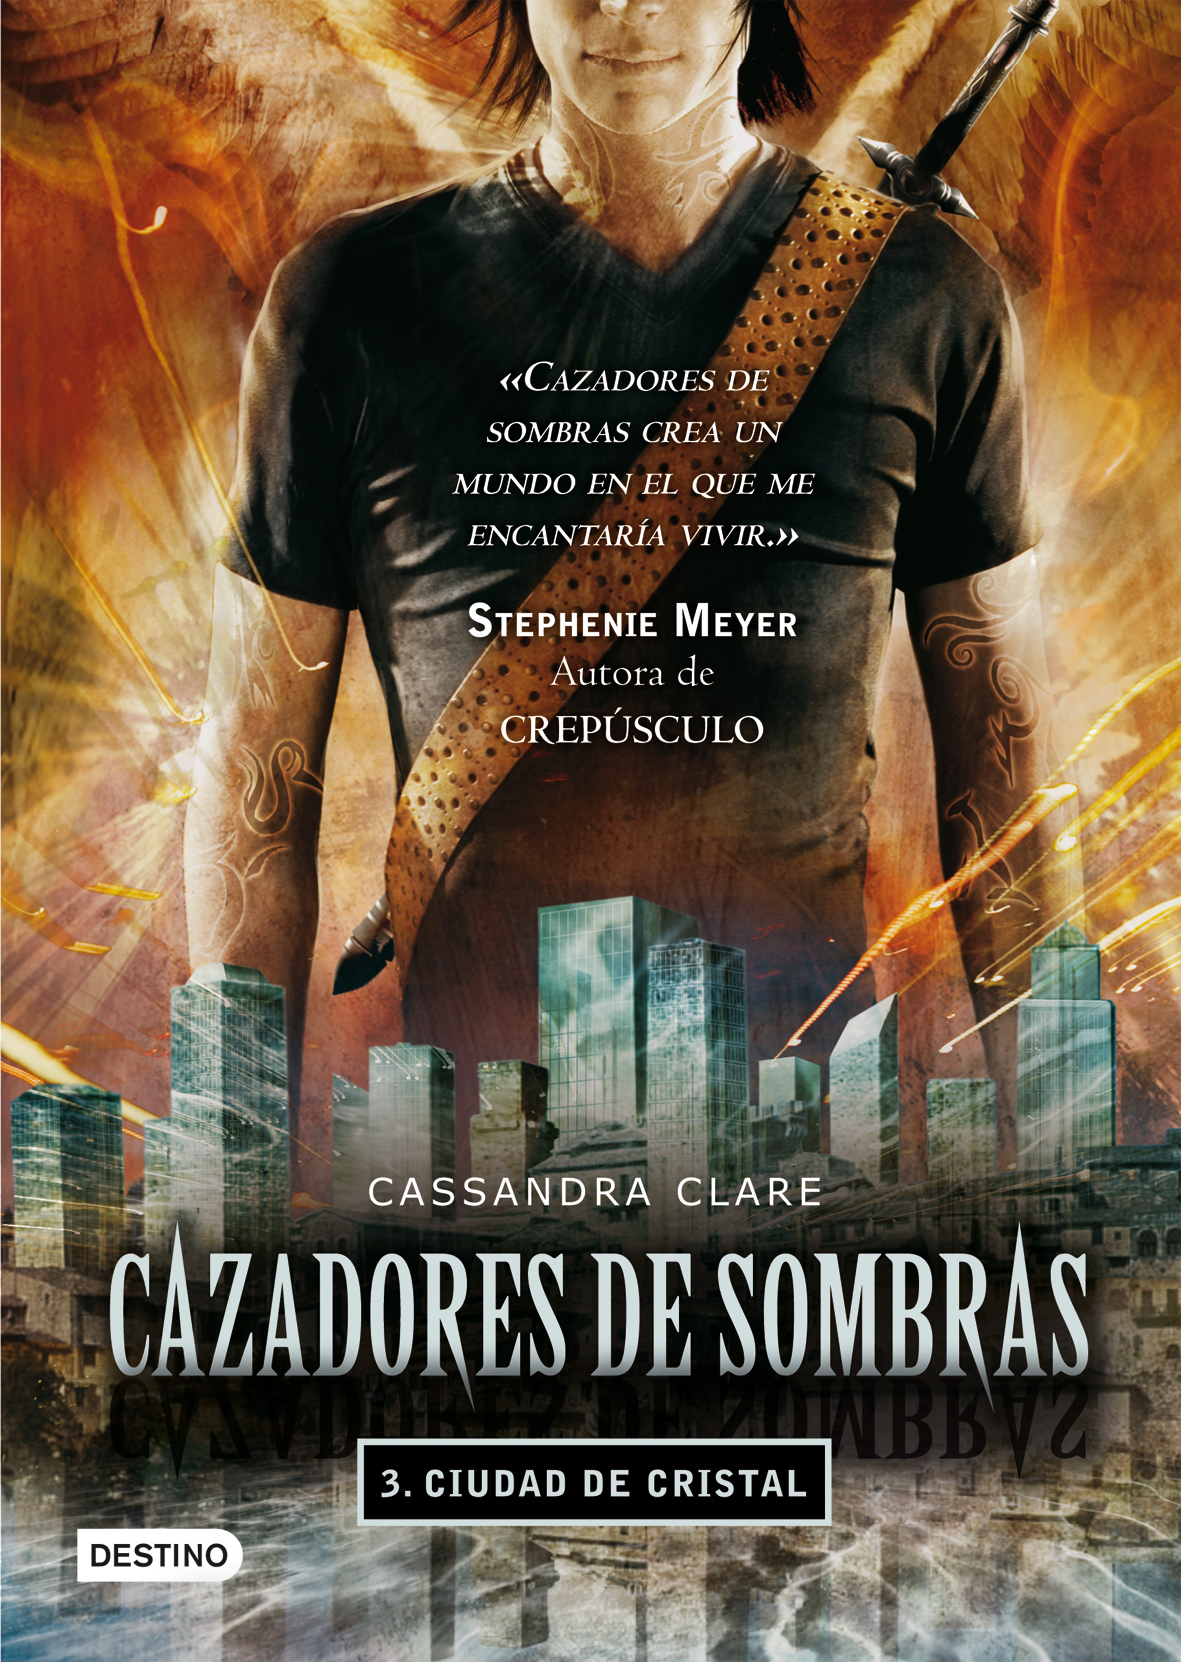 Libro de audio Cazadores de sombras: Ciudad de cristal [3] – Cassandra Clare